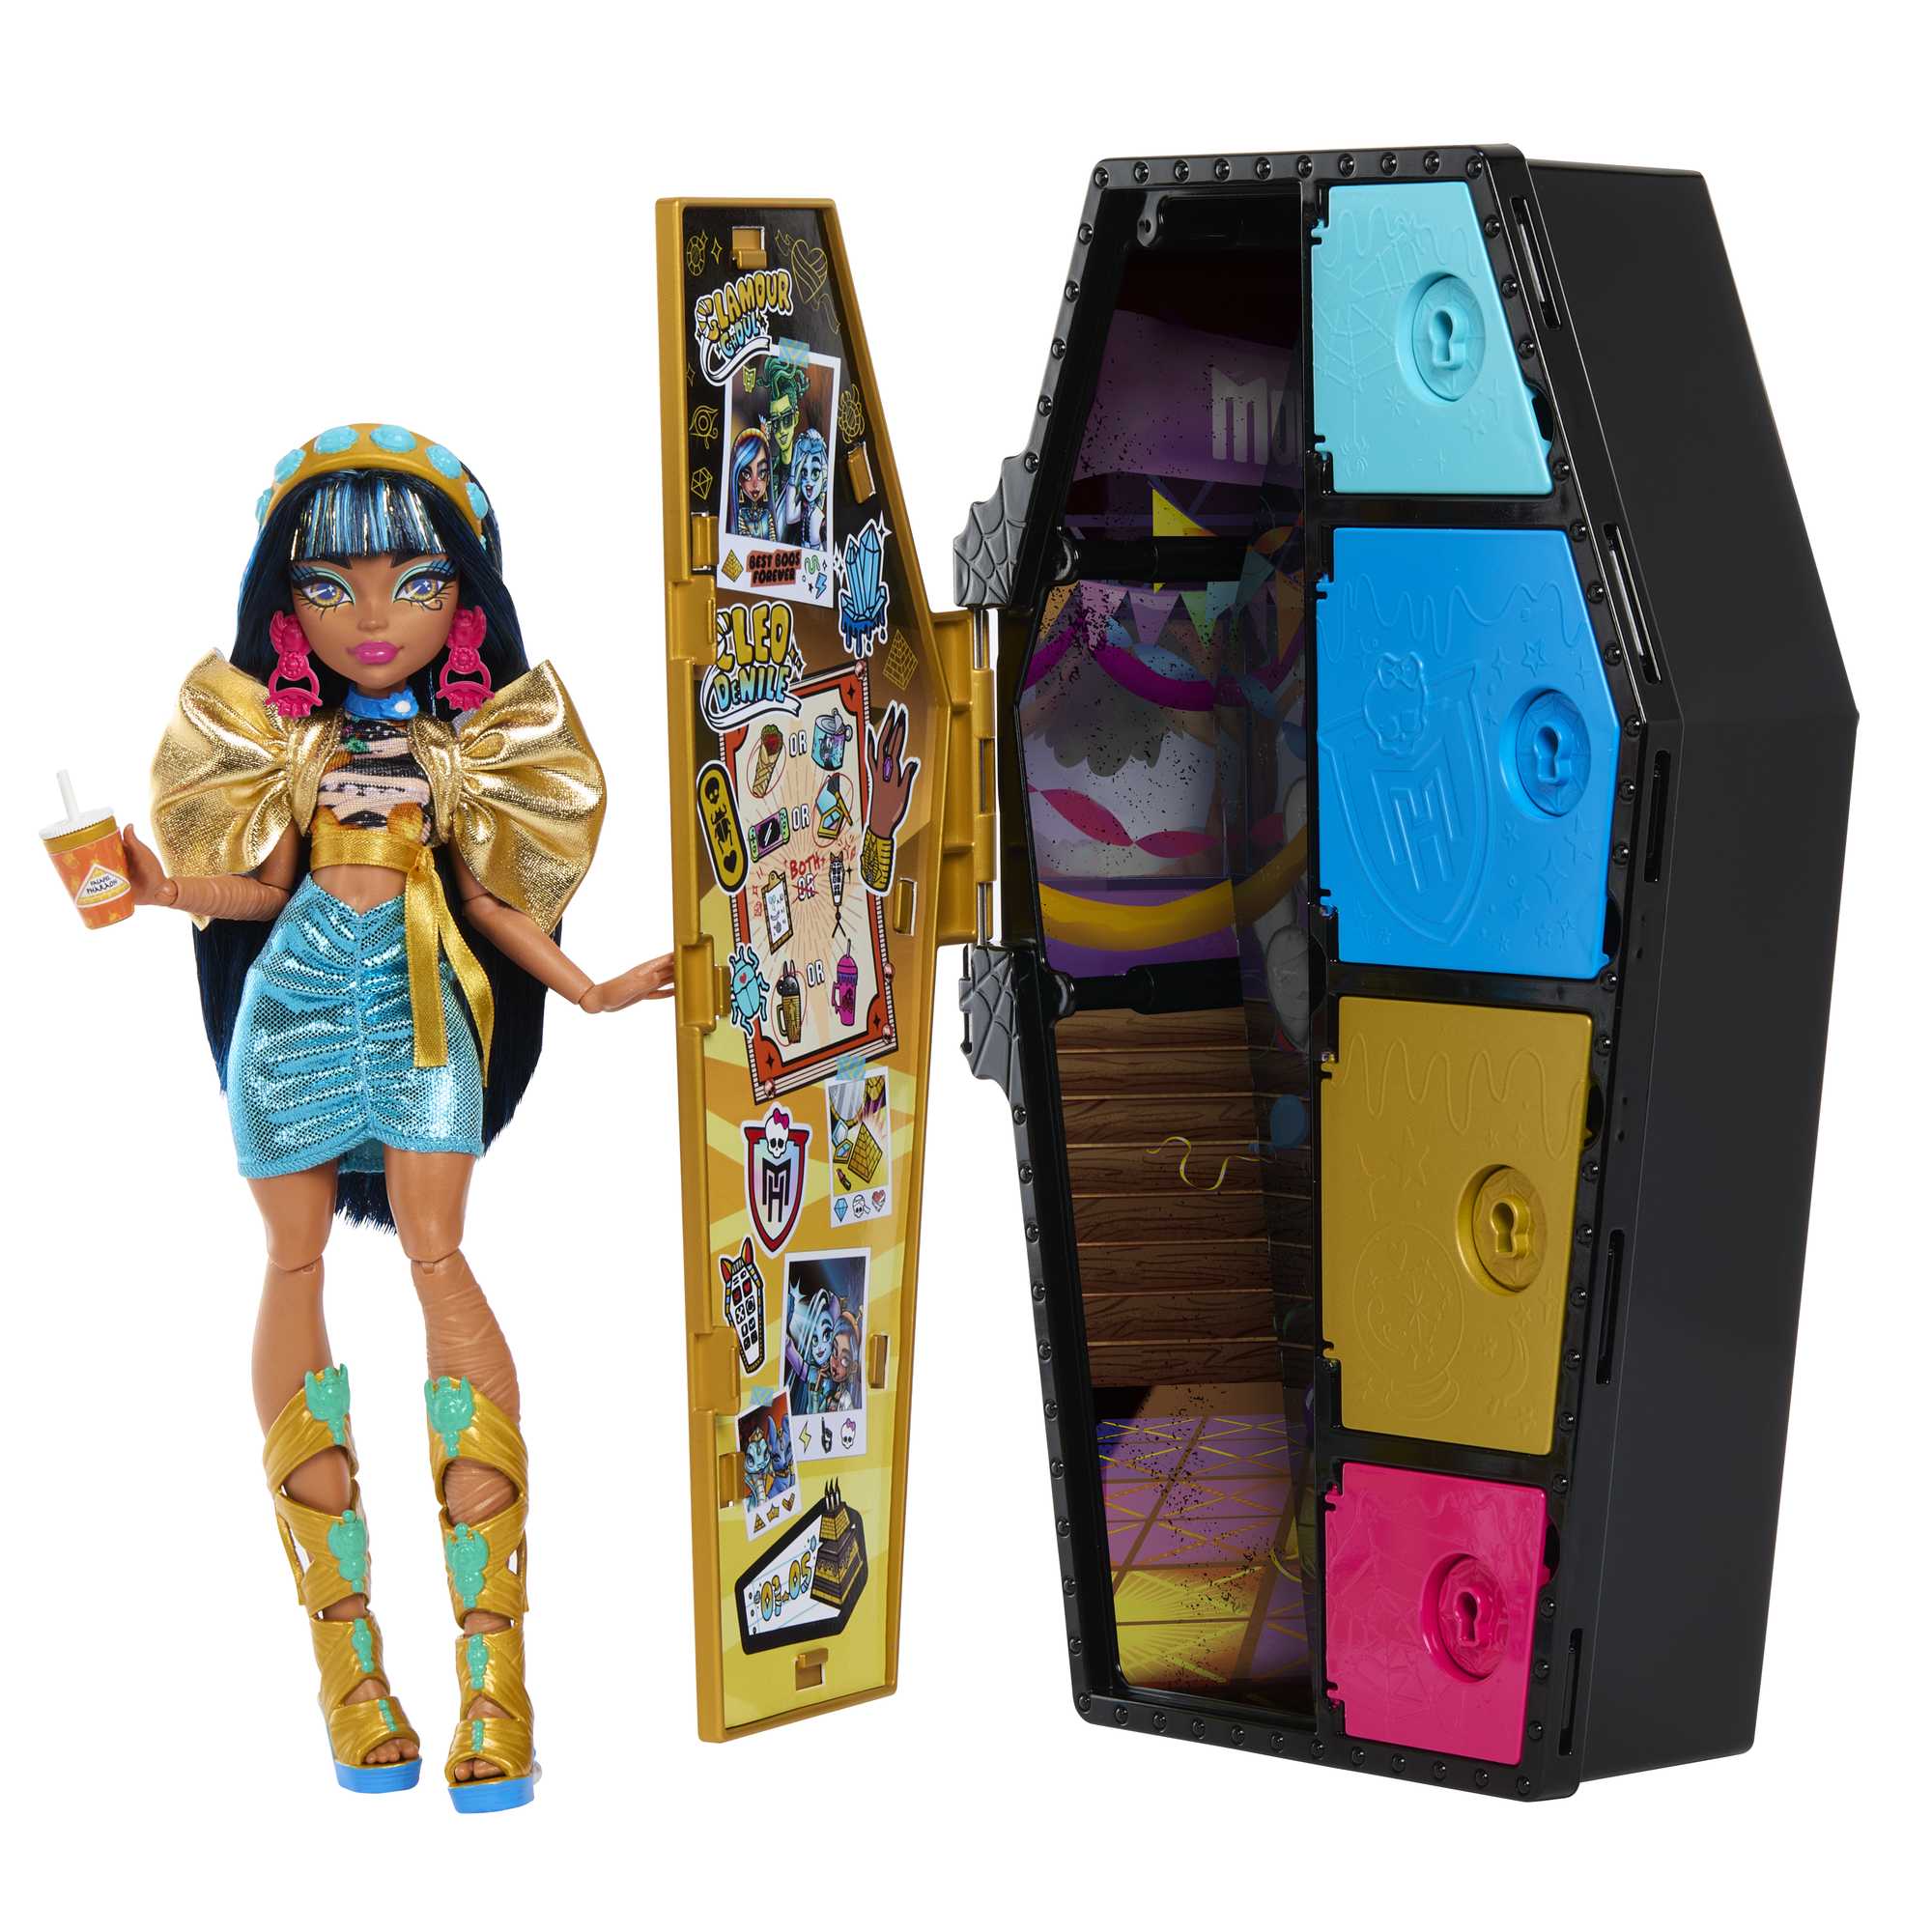 Monster High Cleo de Nile Doll - Macy's